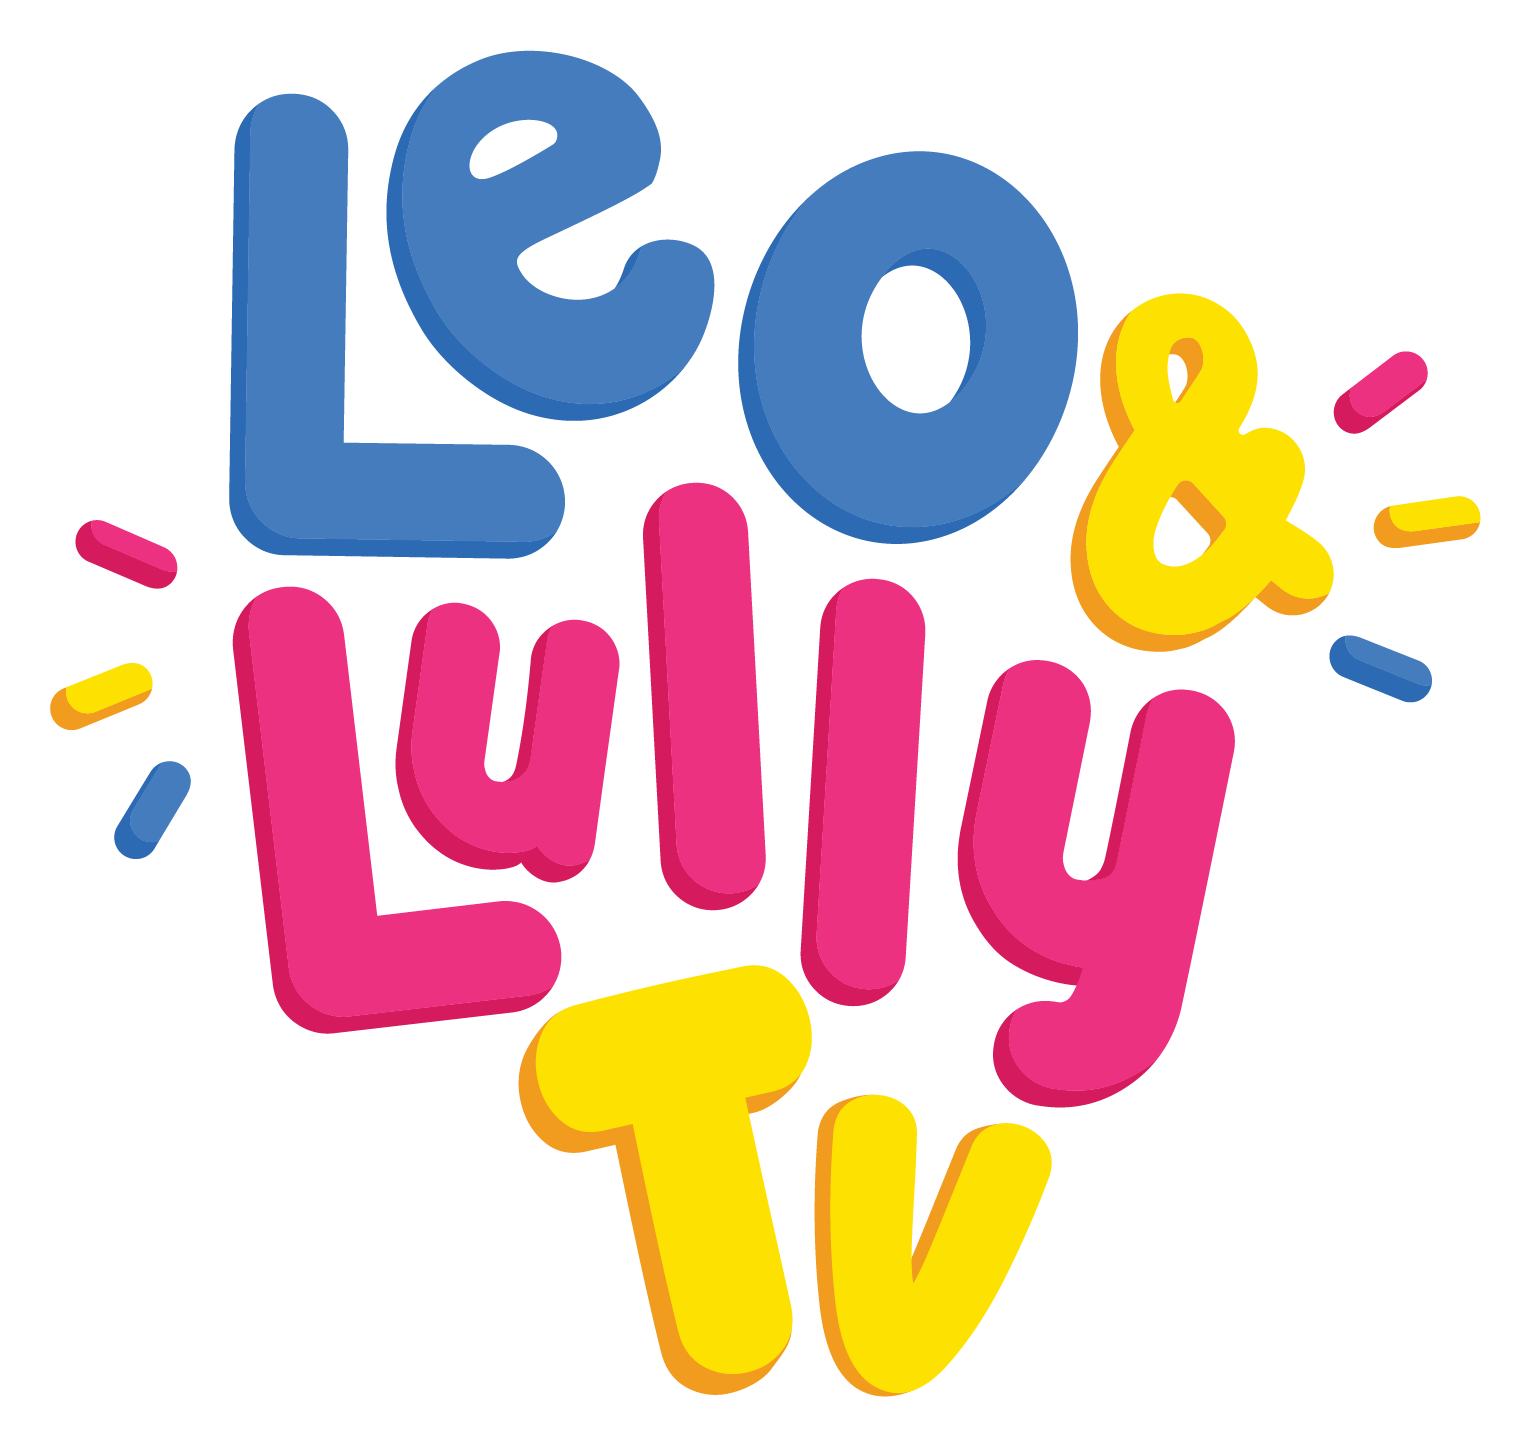 Léo & Lule TV